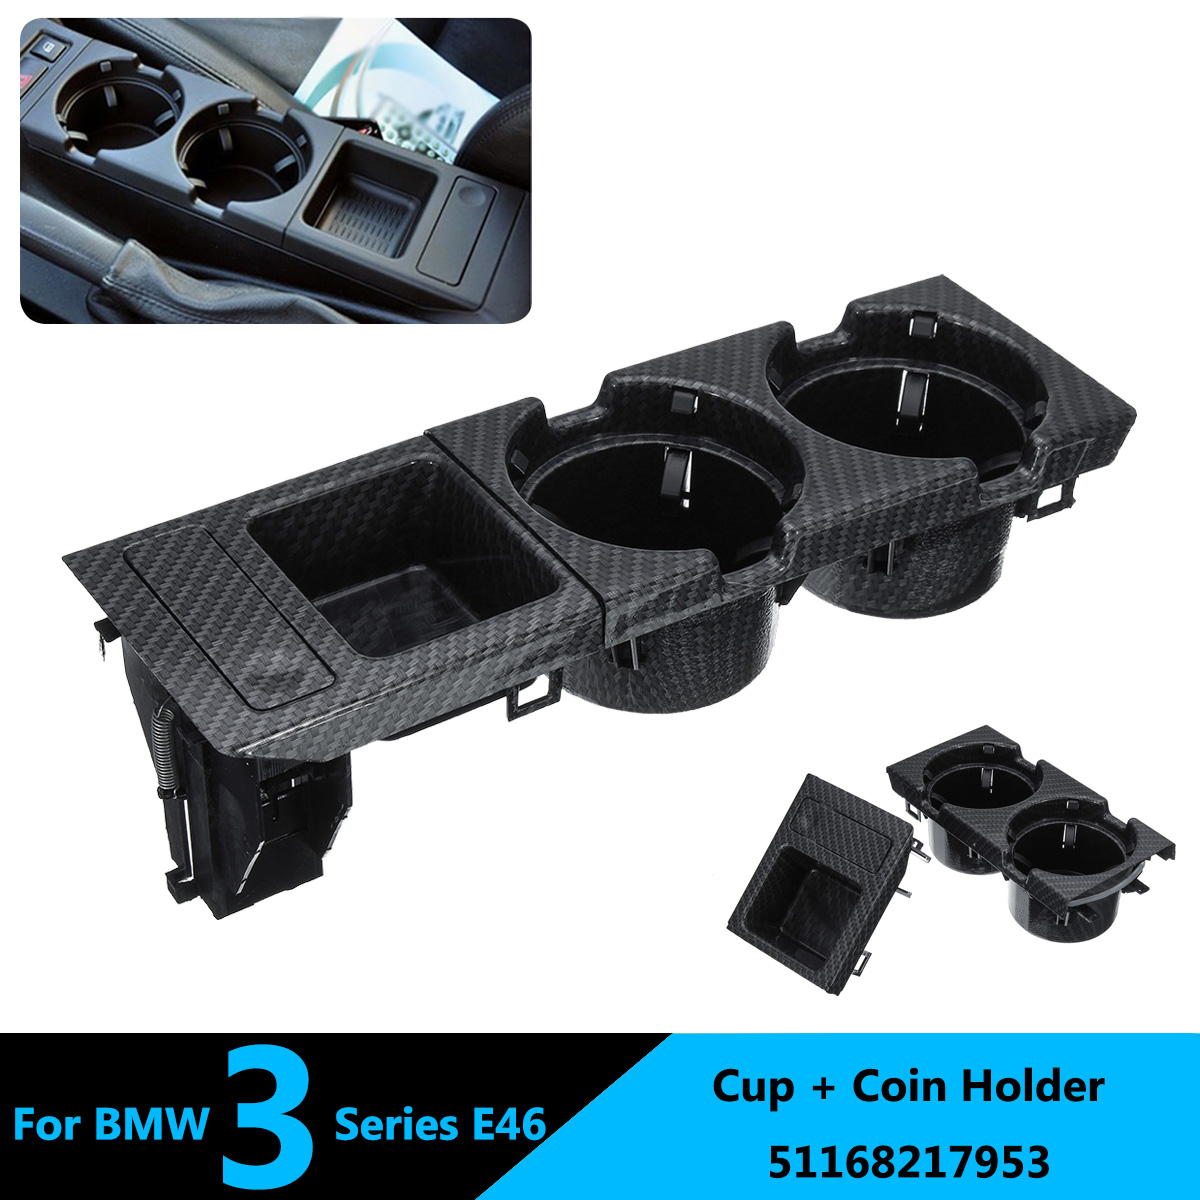 Carbon Fiber Look Console Coin Holder For 99-06 BMW E46 323i 325i 328i 330i M3